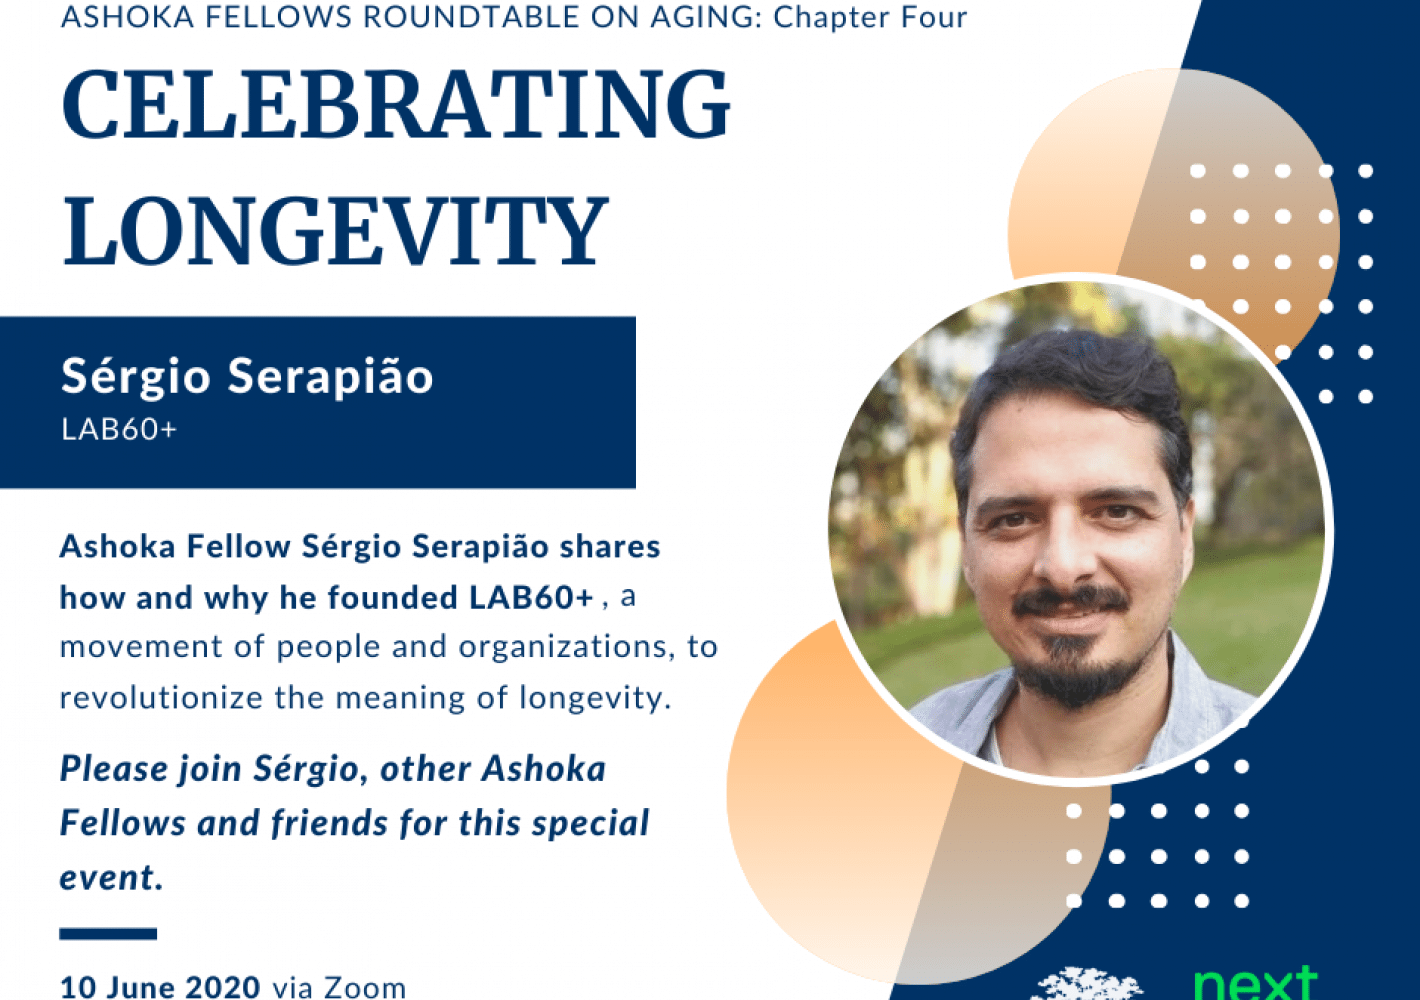  Sérgio Serapião: Celebrating Logevity